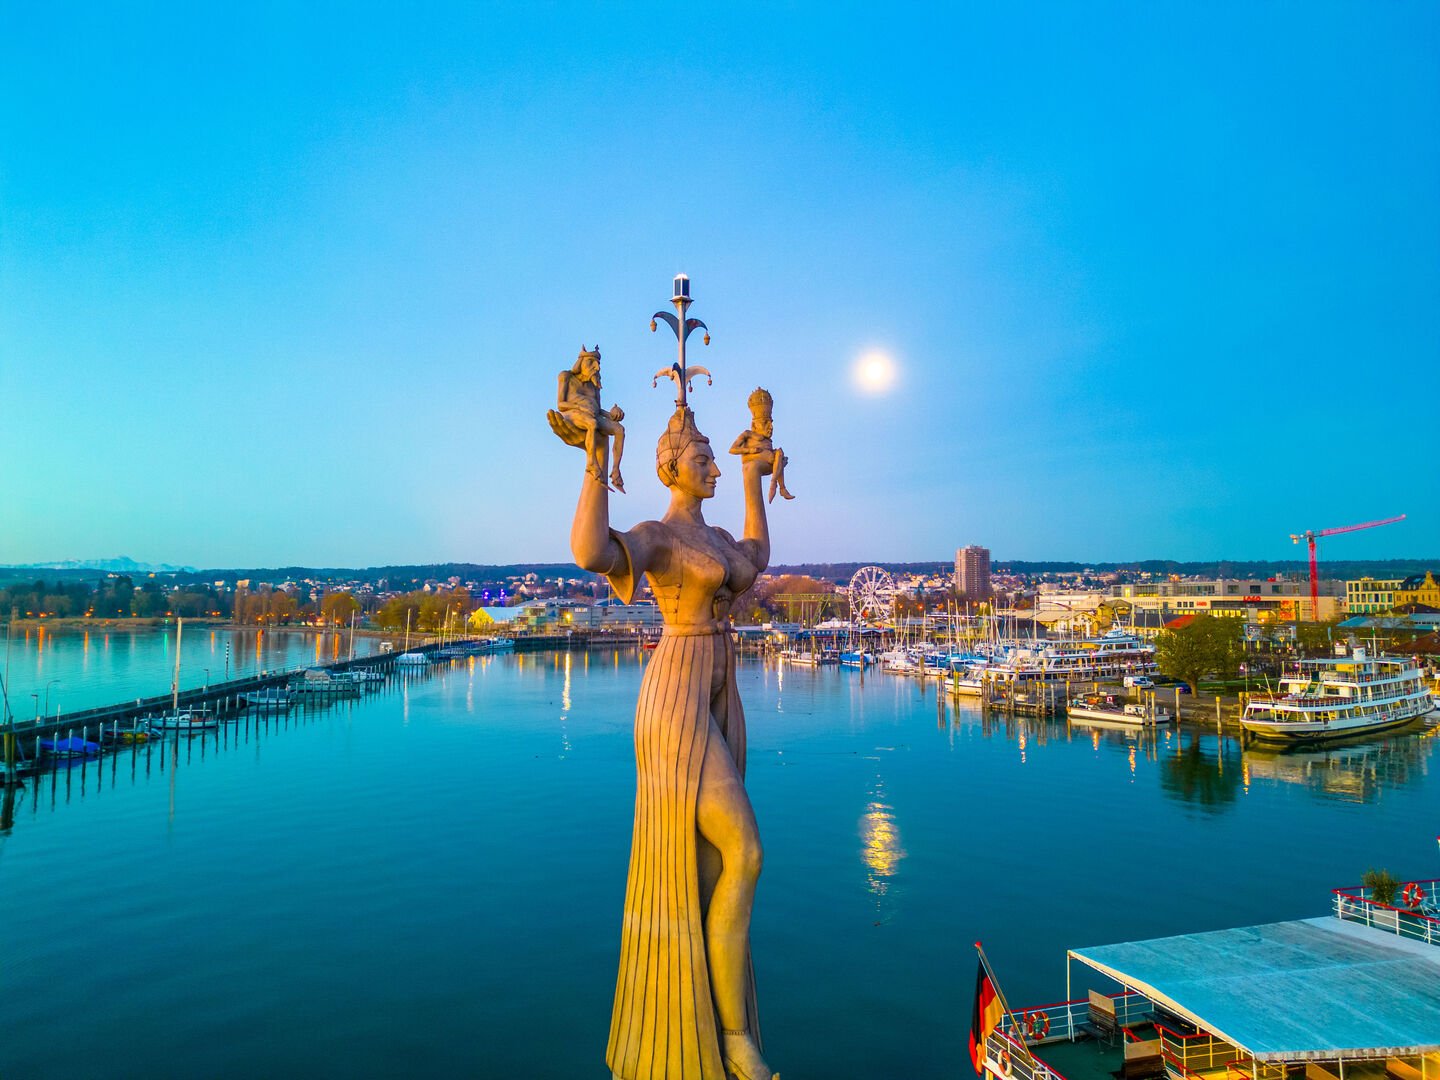 Blick auf die Imperia-Statue am Konstanzer Hafen